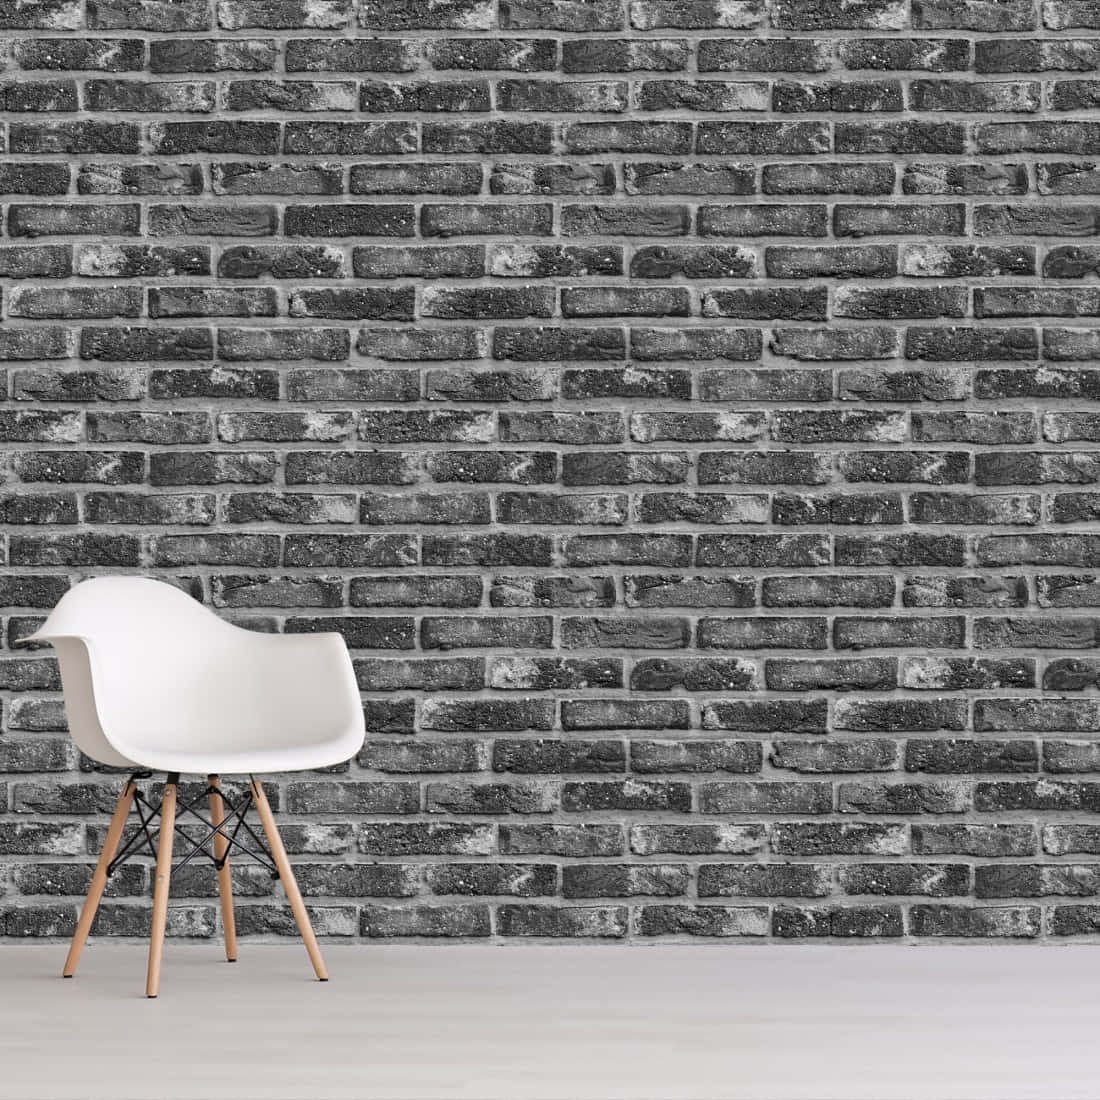 Hvide murstensbilleder skaber en unik baggrund.